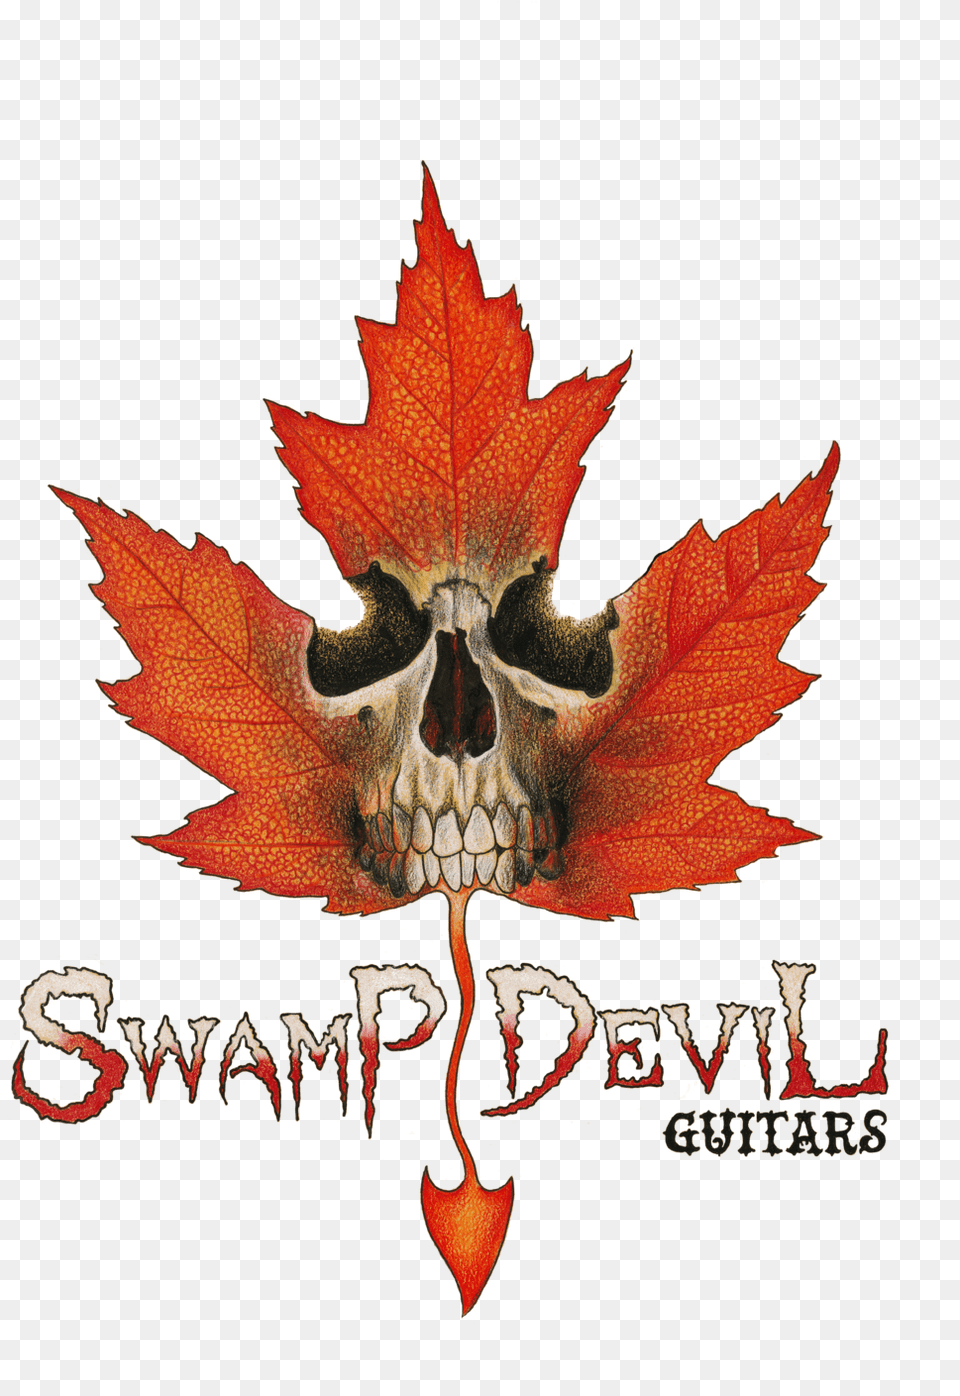 Swamp Devil Guitars Logo, Leaf, Plant, Tree, Maple Png